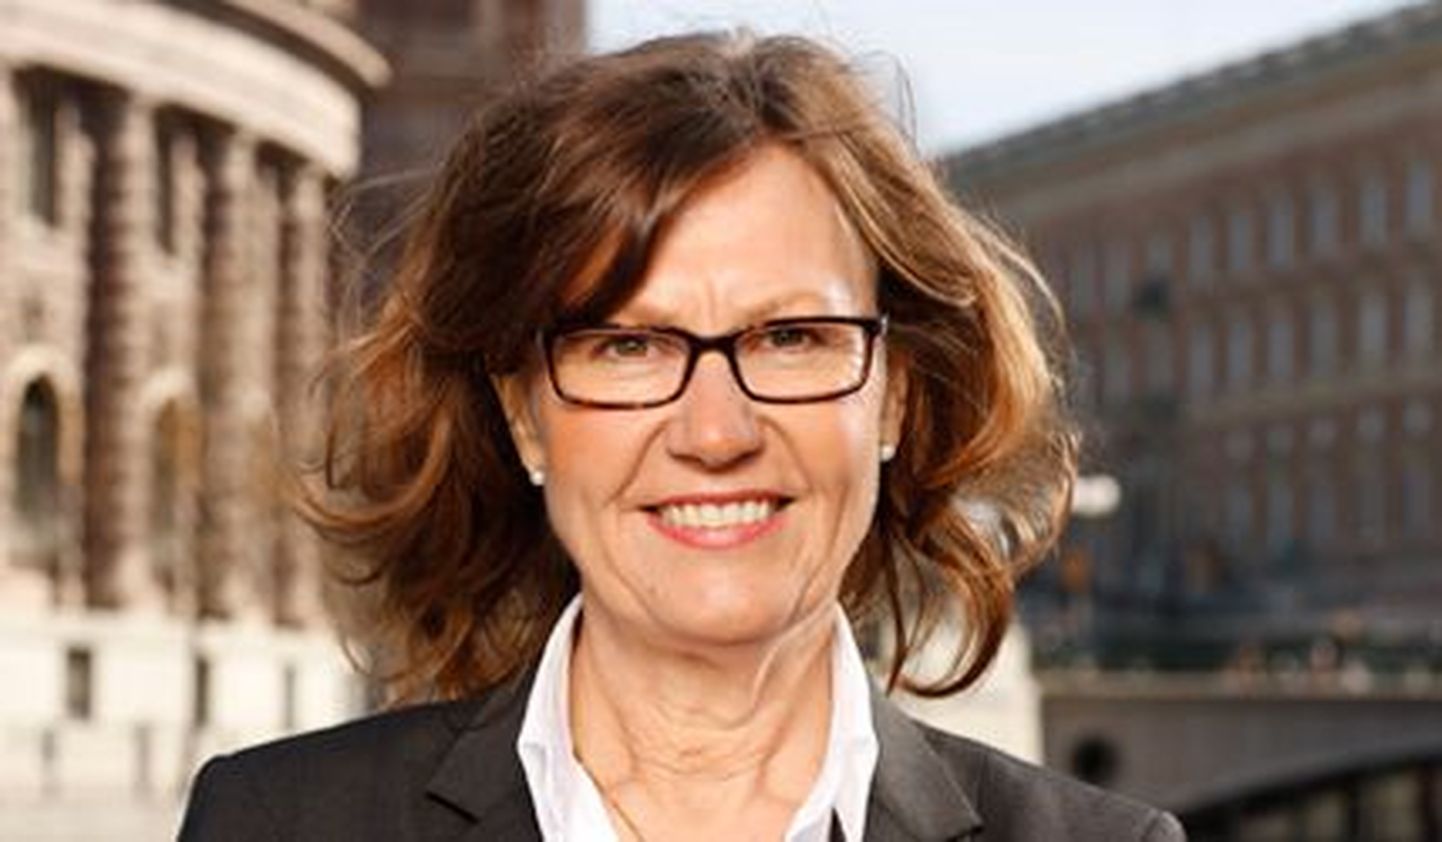 Anna-Stina Nordmark Nilsson